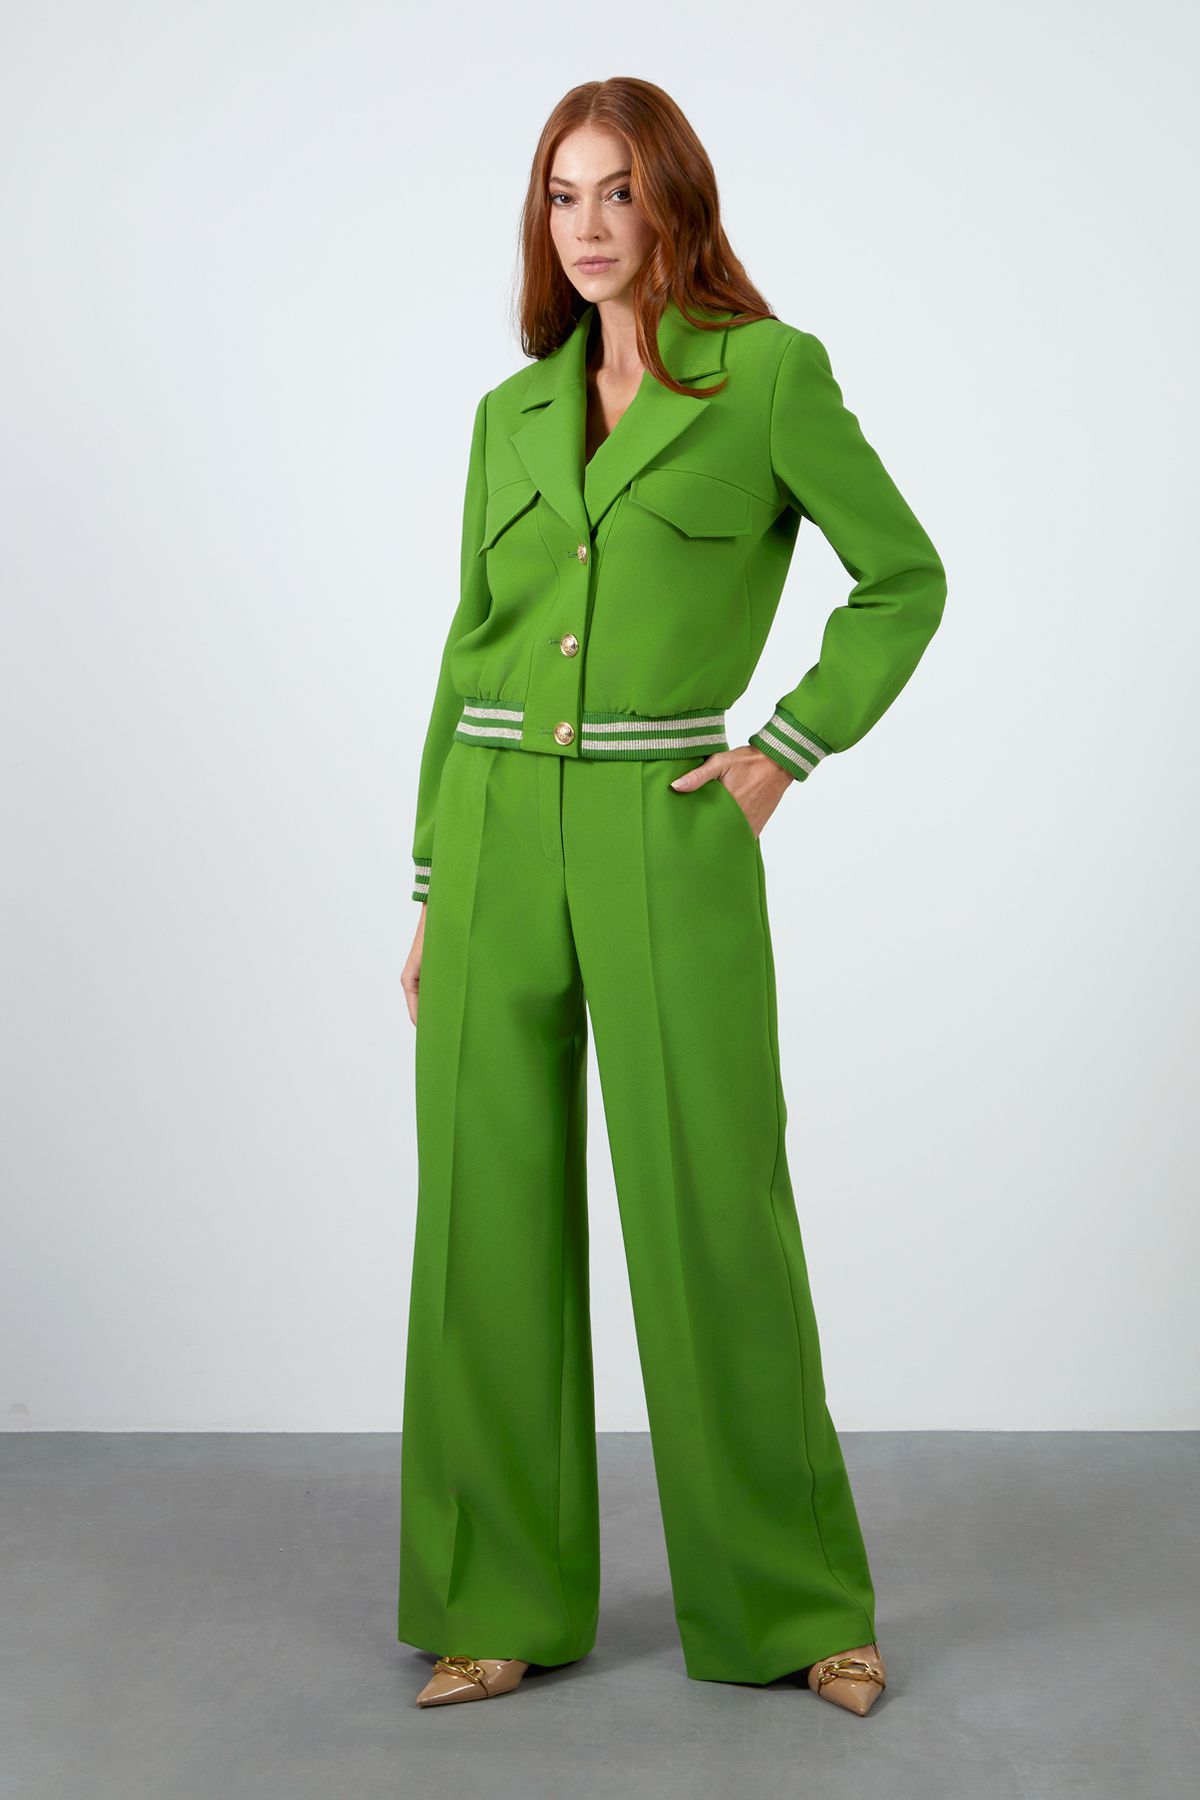 GIZIA Etek Ve Kol Ucu Ribanalı Ceket Pantolonlu Yeşil Takım